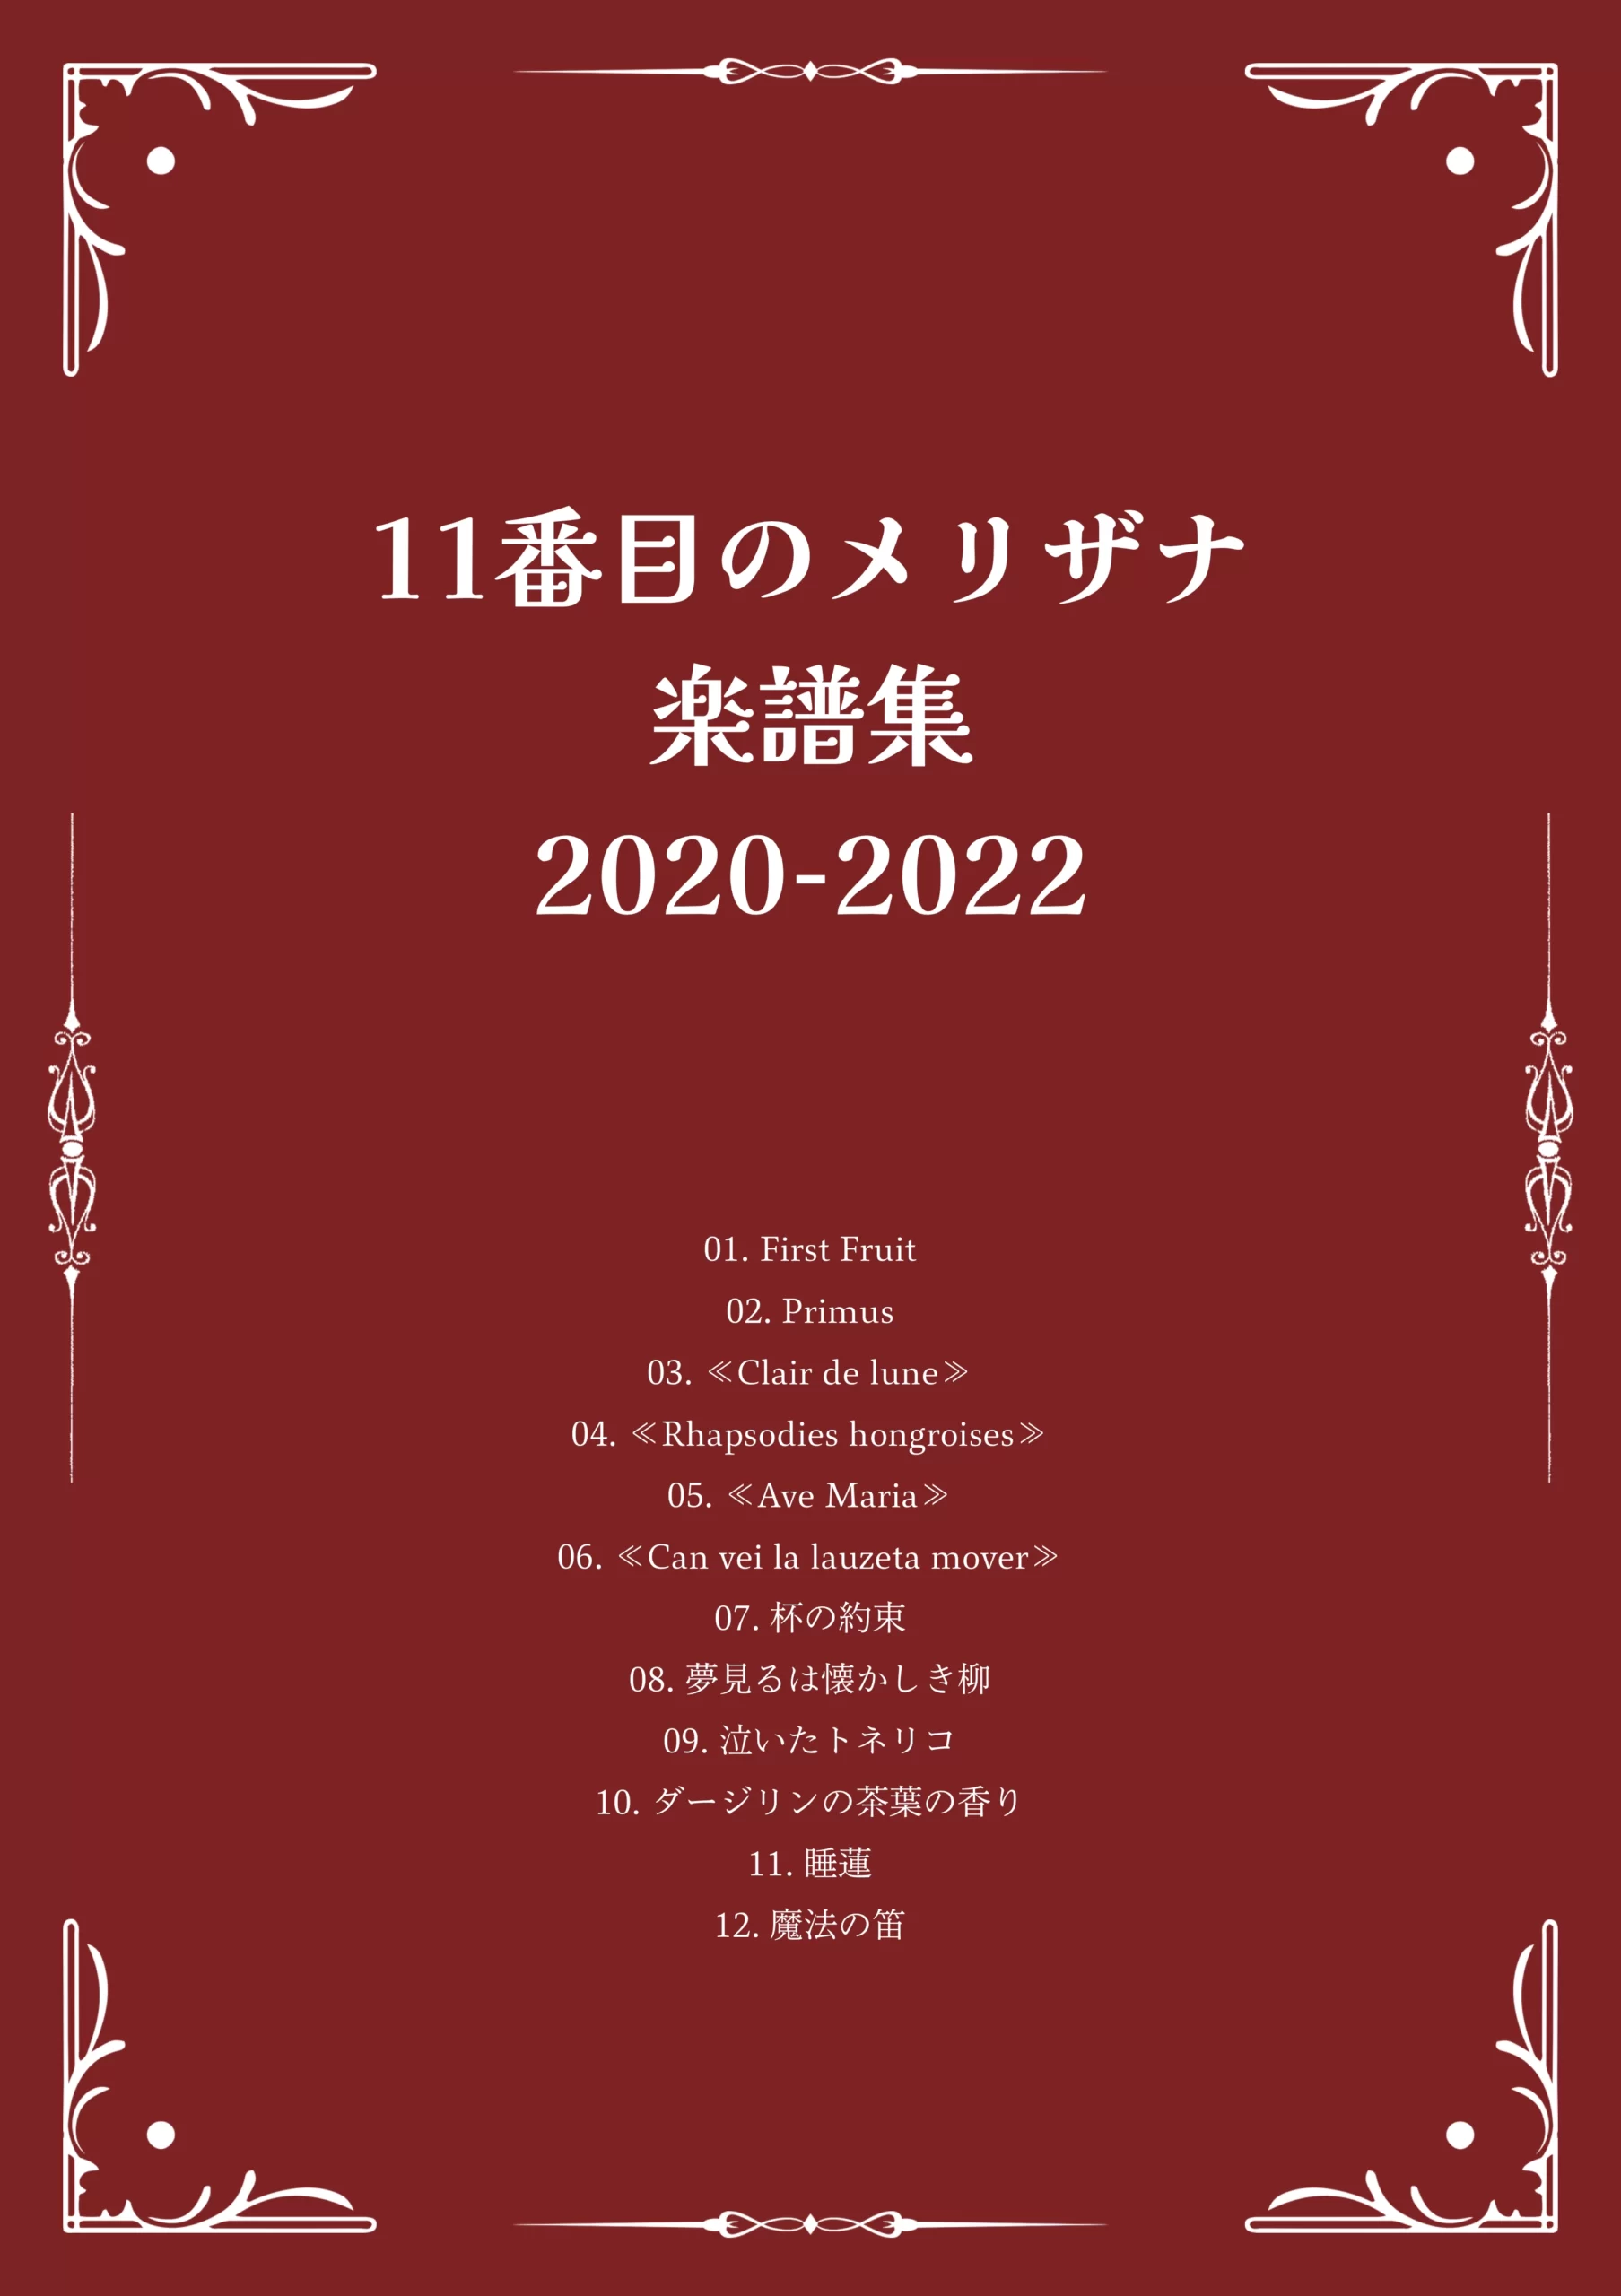 1st Score Book 『11番目のメリザナ 楽譜集 2020-2022』 表紙